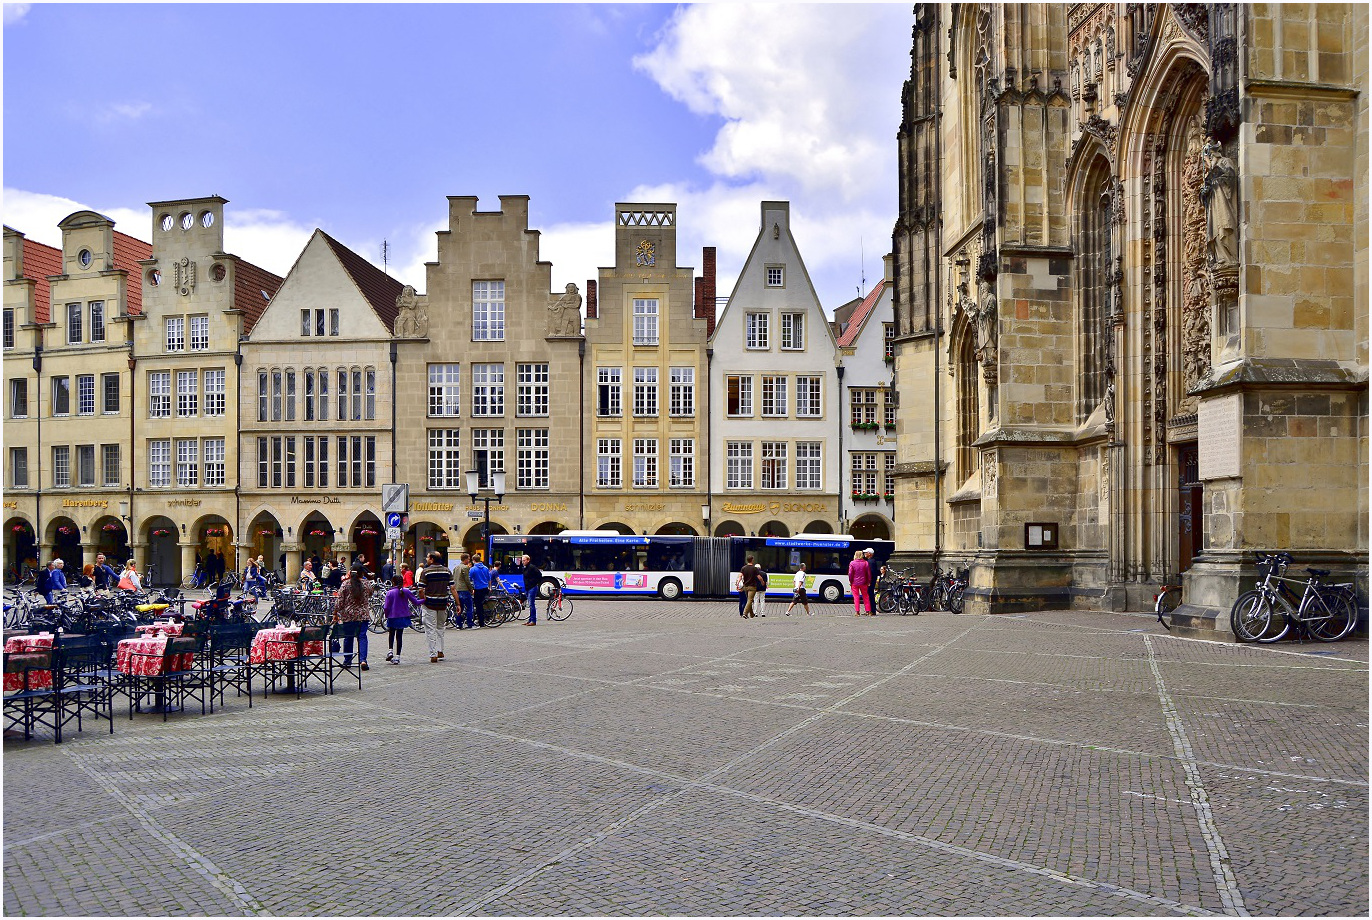 Altstadt in Münster